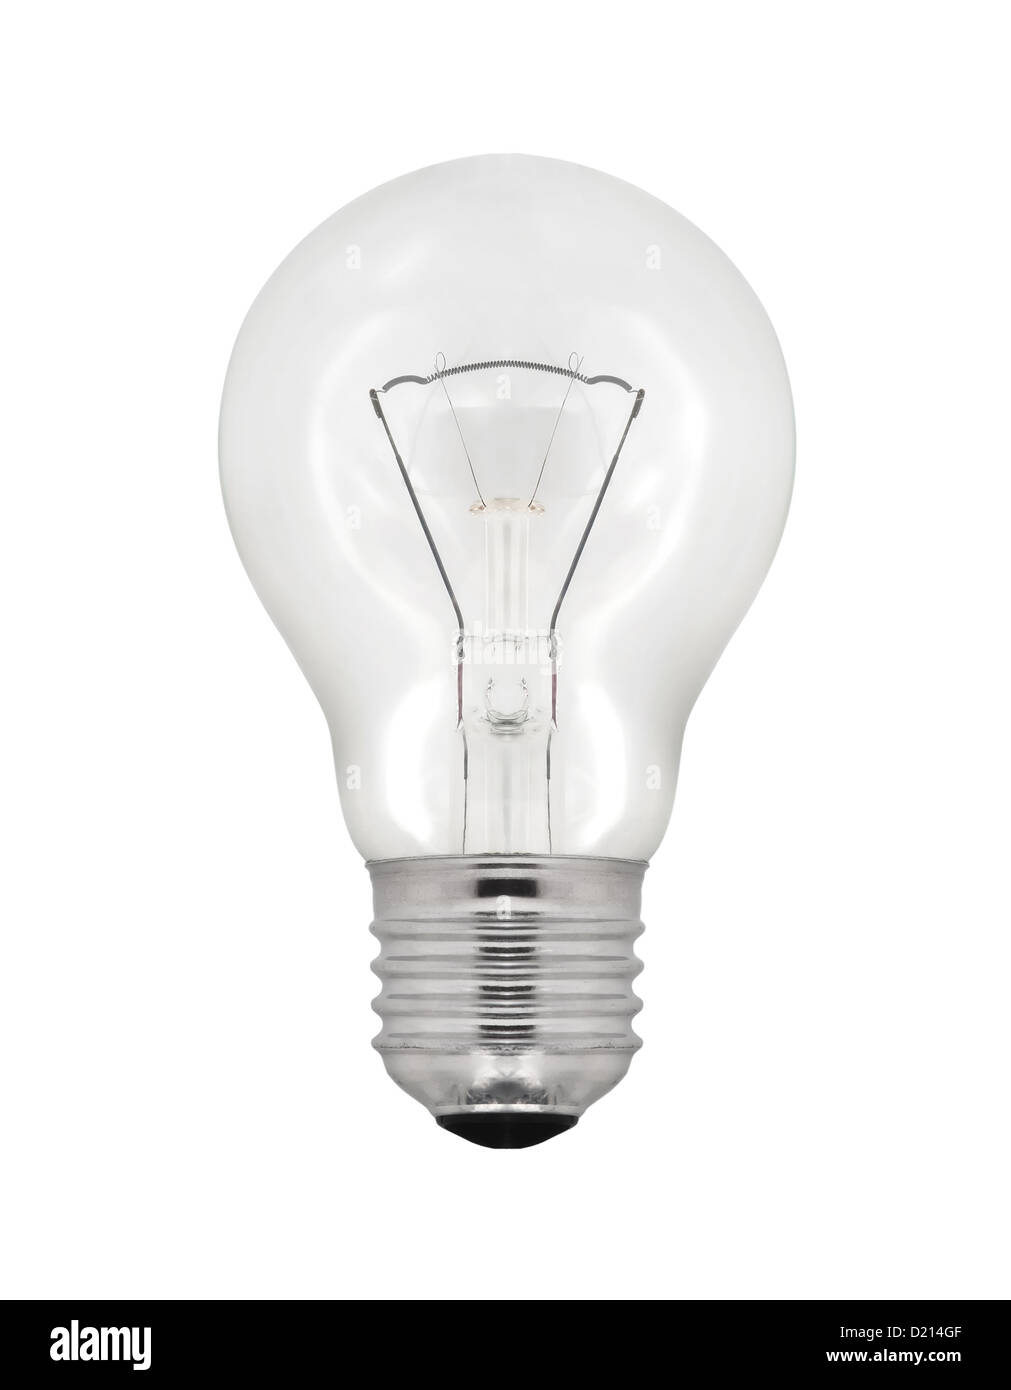 Light bulb isolated on white background. Stock Photo